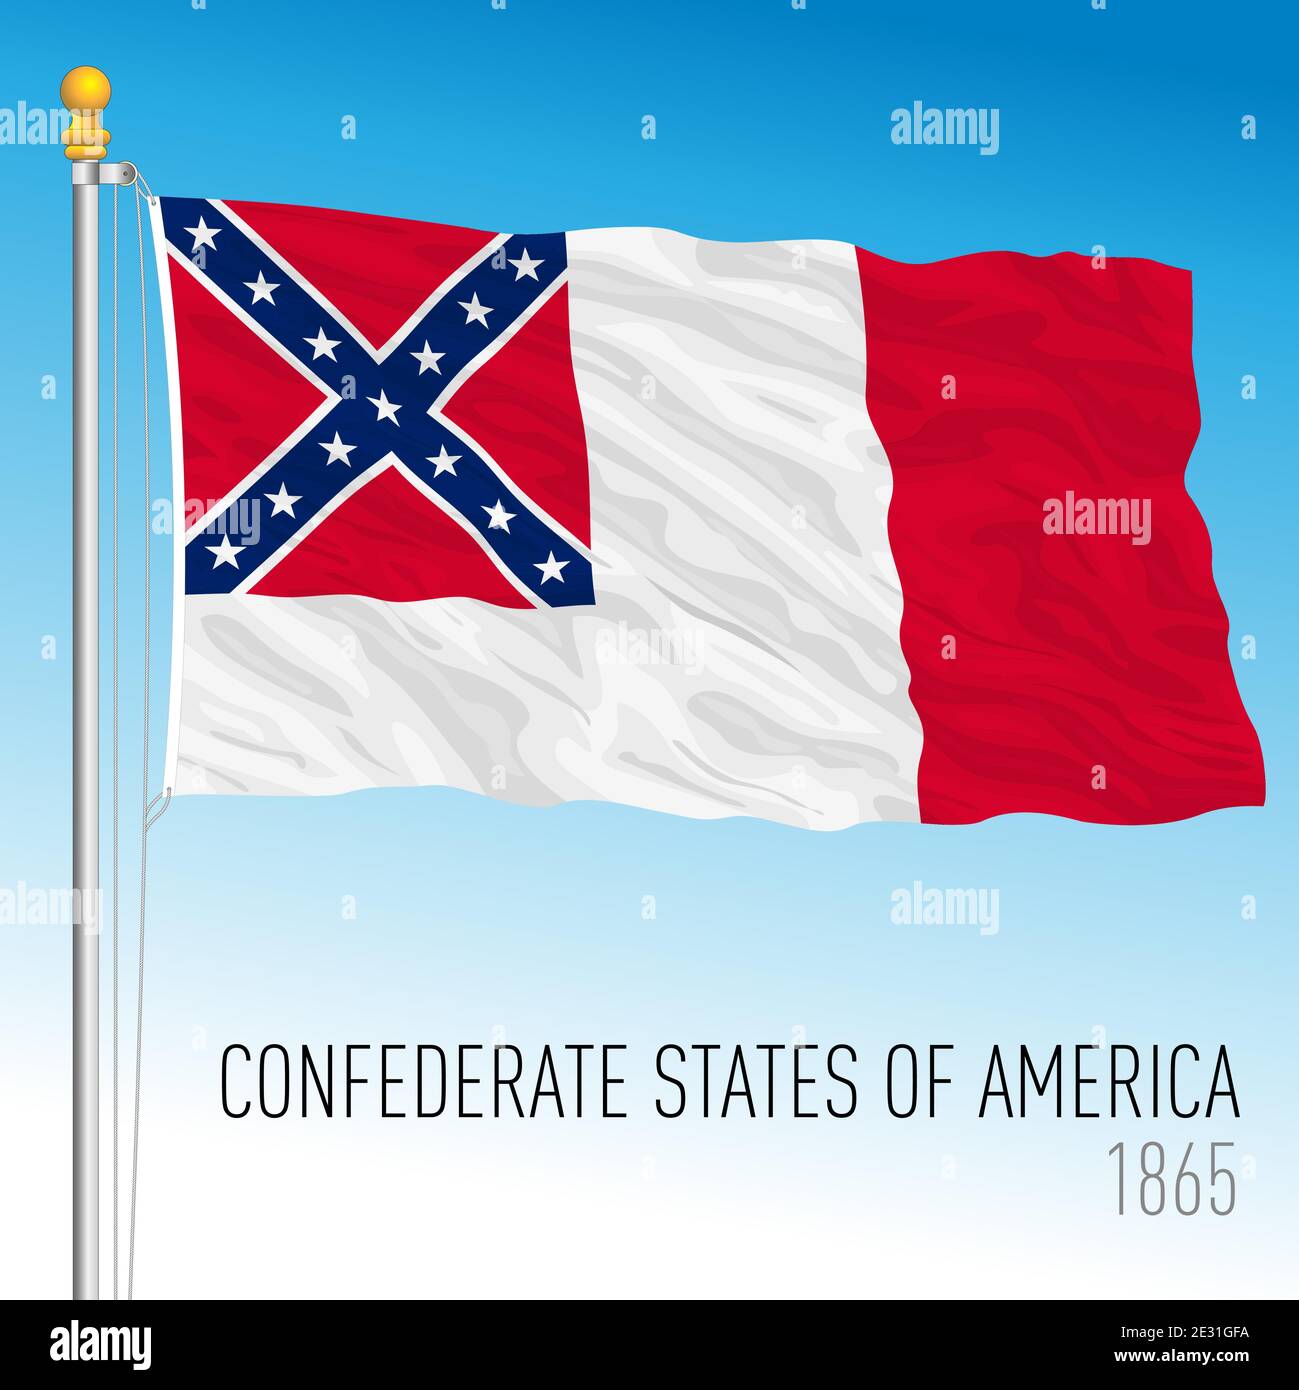 Konföderierte Staaten historische Flagge, 1865, Vereinigte Staaten, Vektor-Illustration Stock Vektor